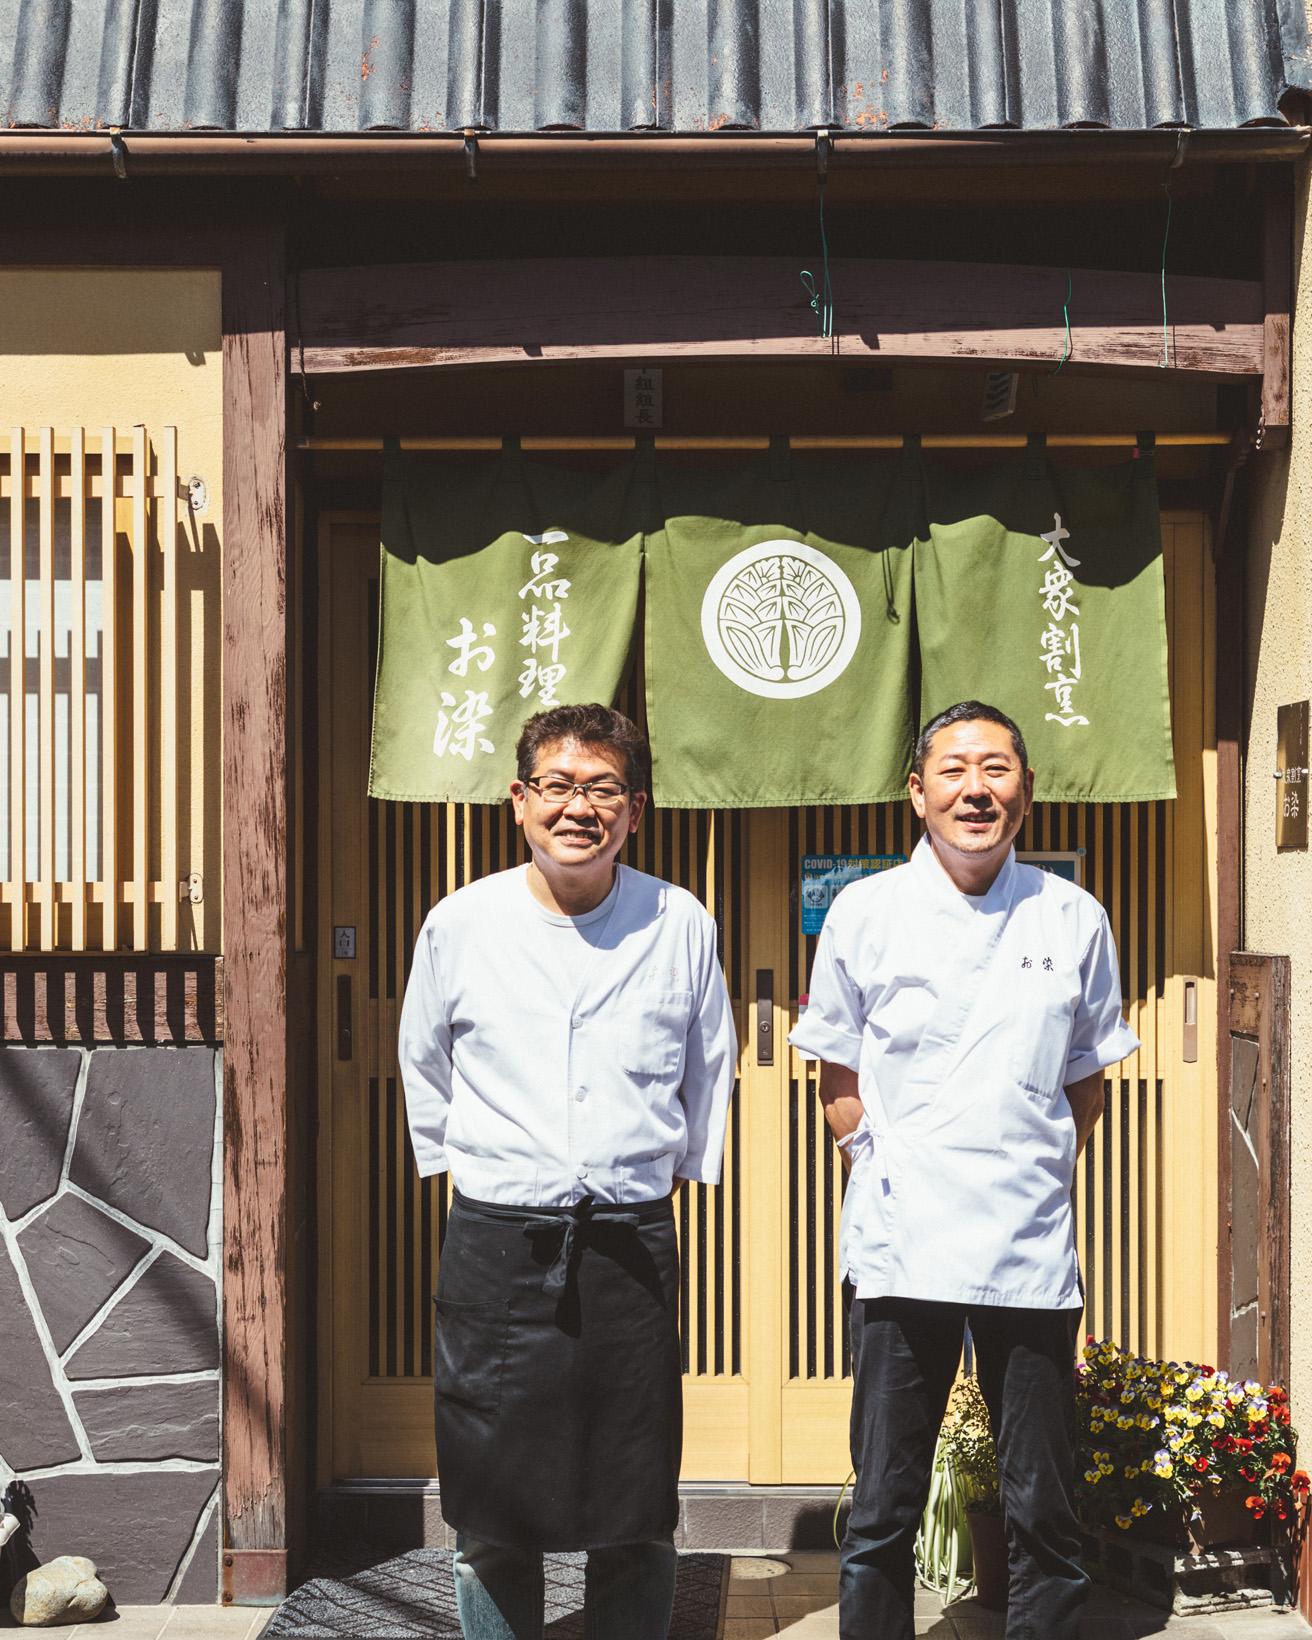 〈お染〉の森山さん兄弟。岡山、中でも津山に特化した郷土料理が食べられる貴重な大衆割烹として人気だ。